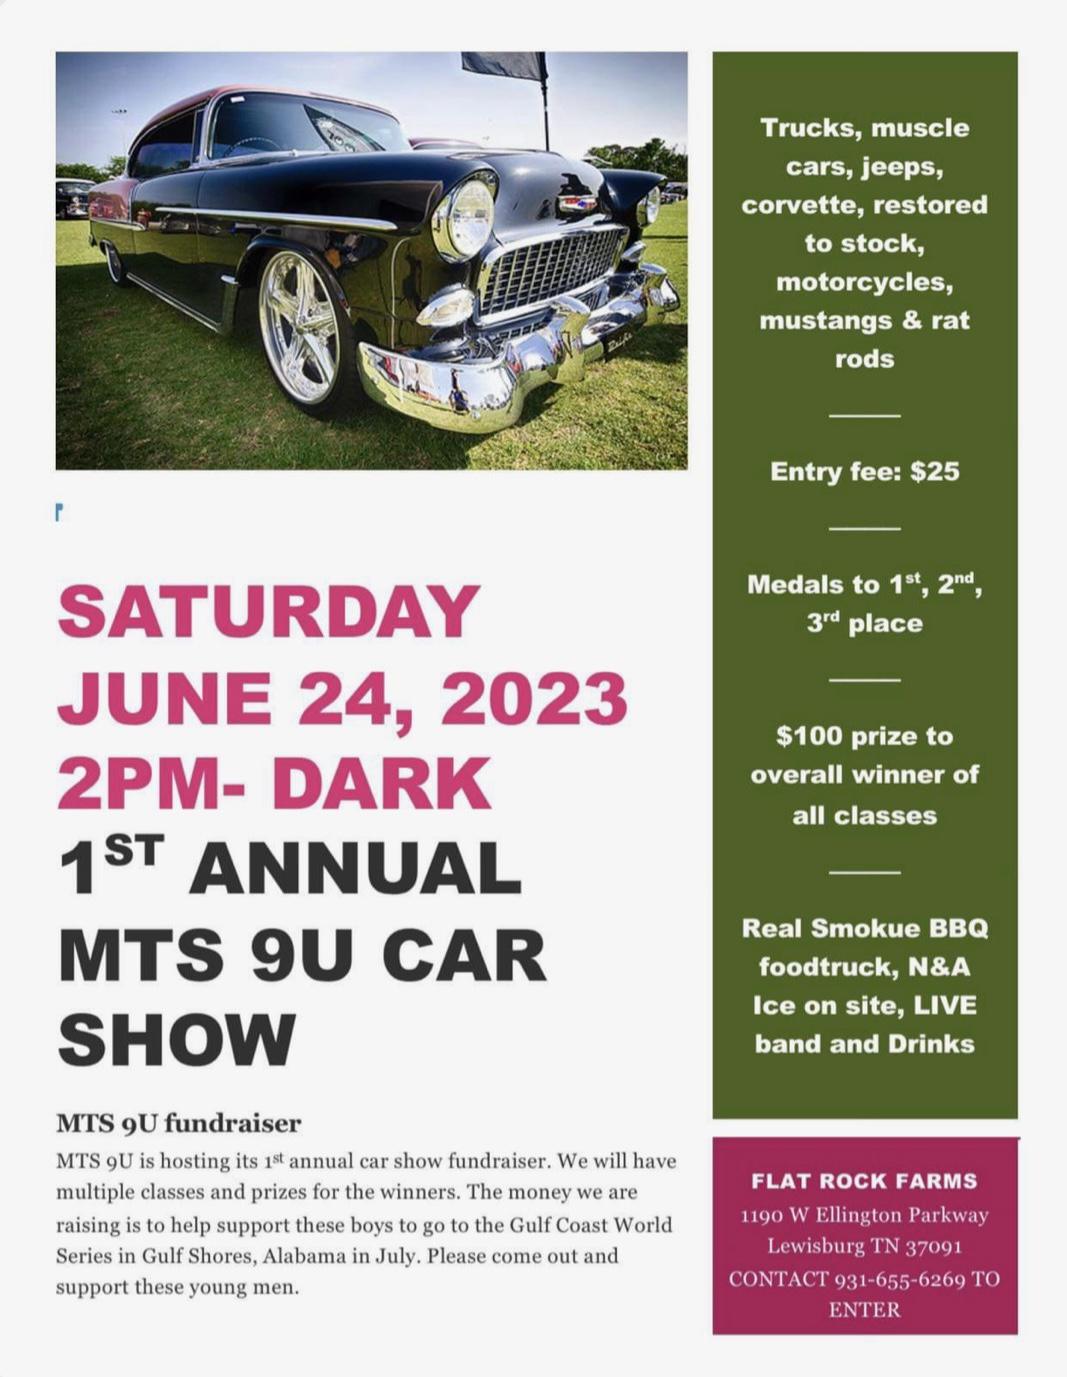 1st Annual MTS 9U CAR SHOW